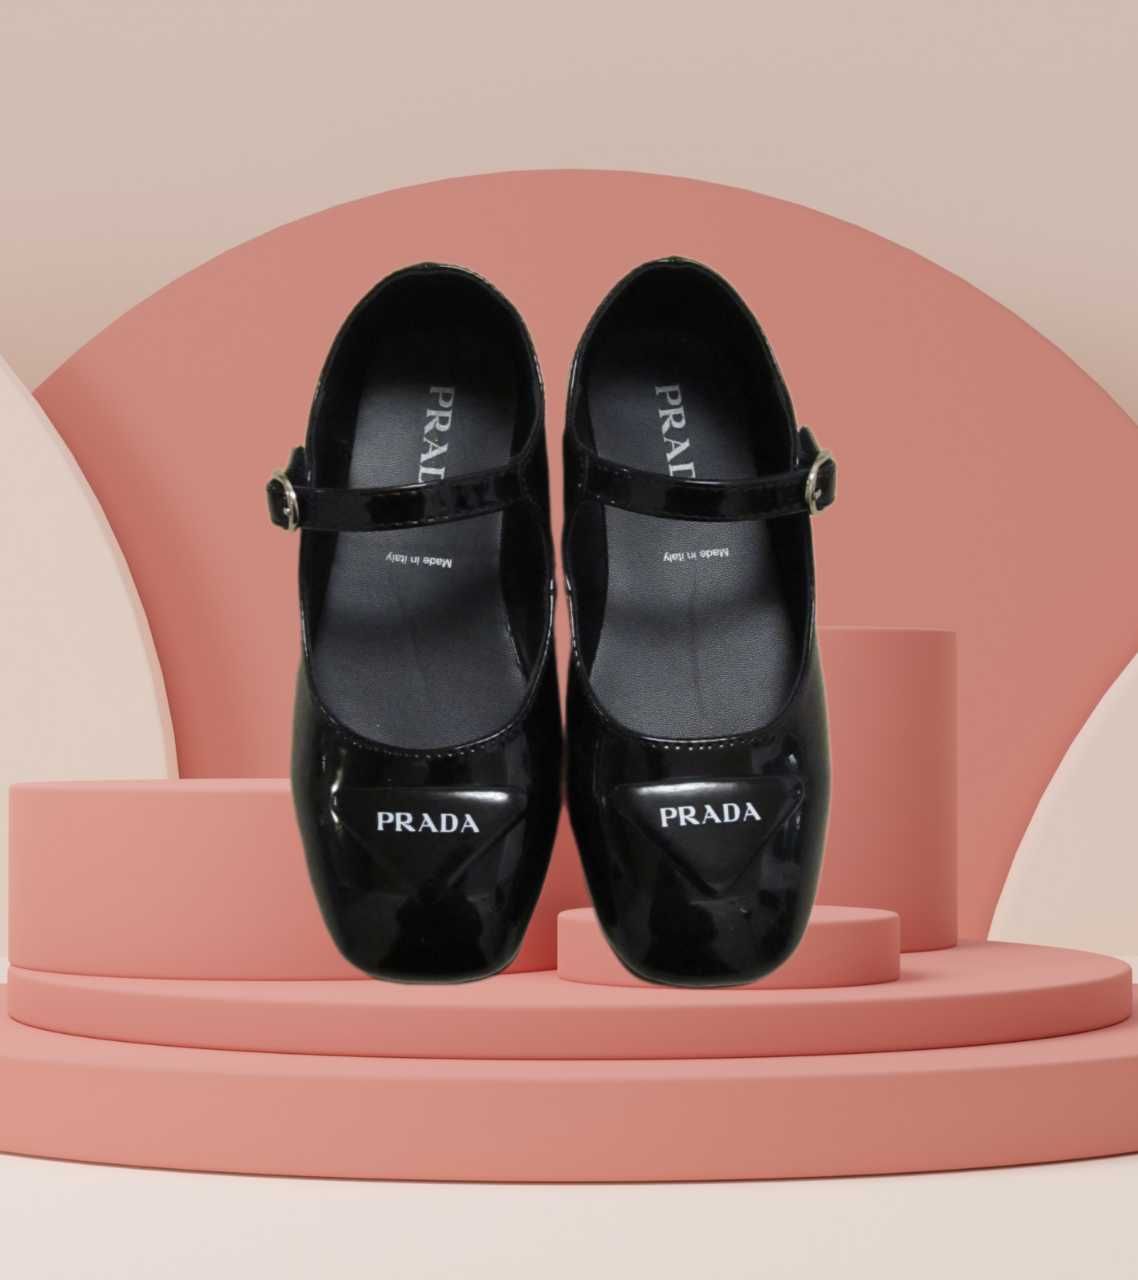 Элегантные лакированные туфли балетки с пряжкой-логотипом PRADA